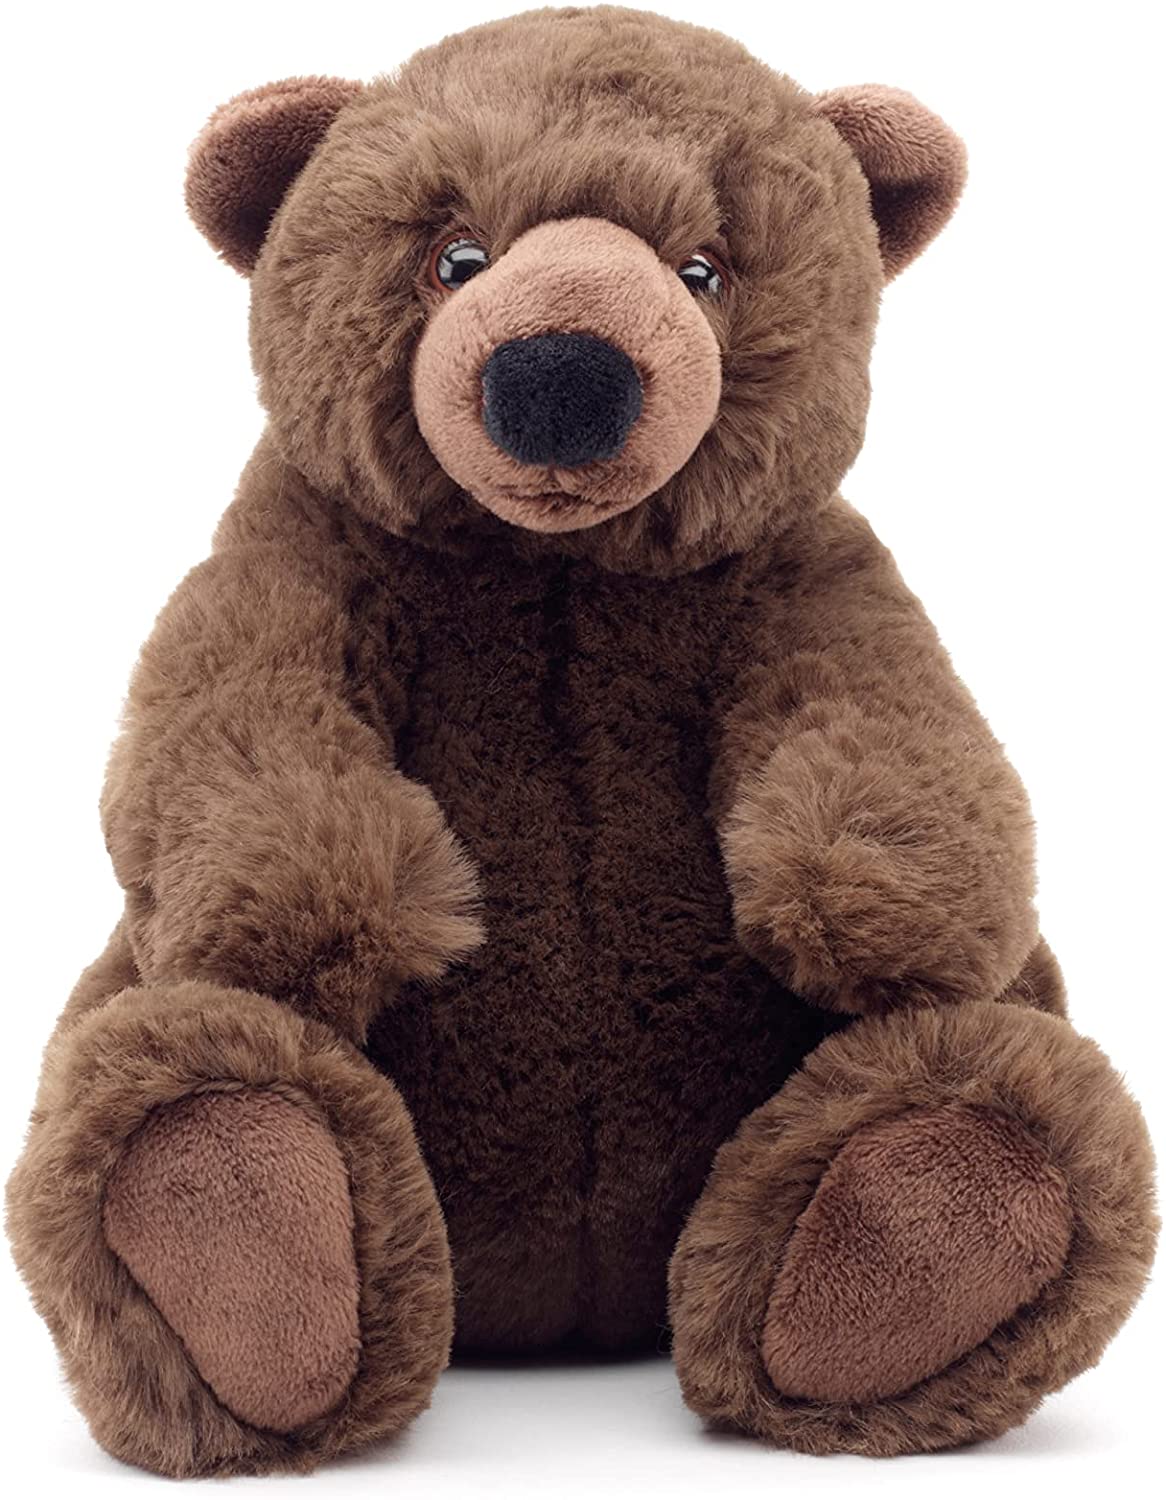 Uni-Toys - Braunbär klein, sitzend - 'Charlie' - superweich - 20 cm (Höhe) - Plüsch-Bär, Teddy, Teddybär - Plüschtier, Kuscheltier 